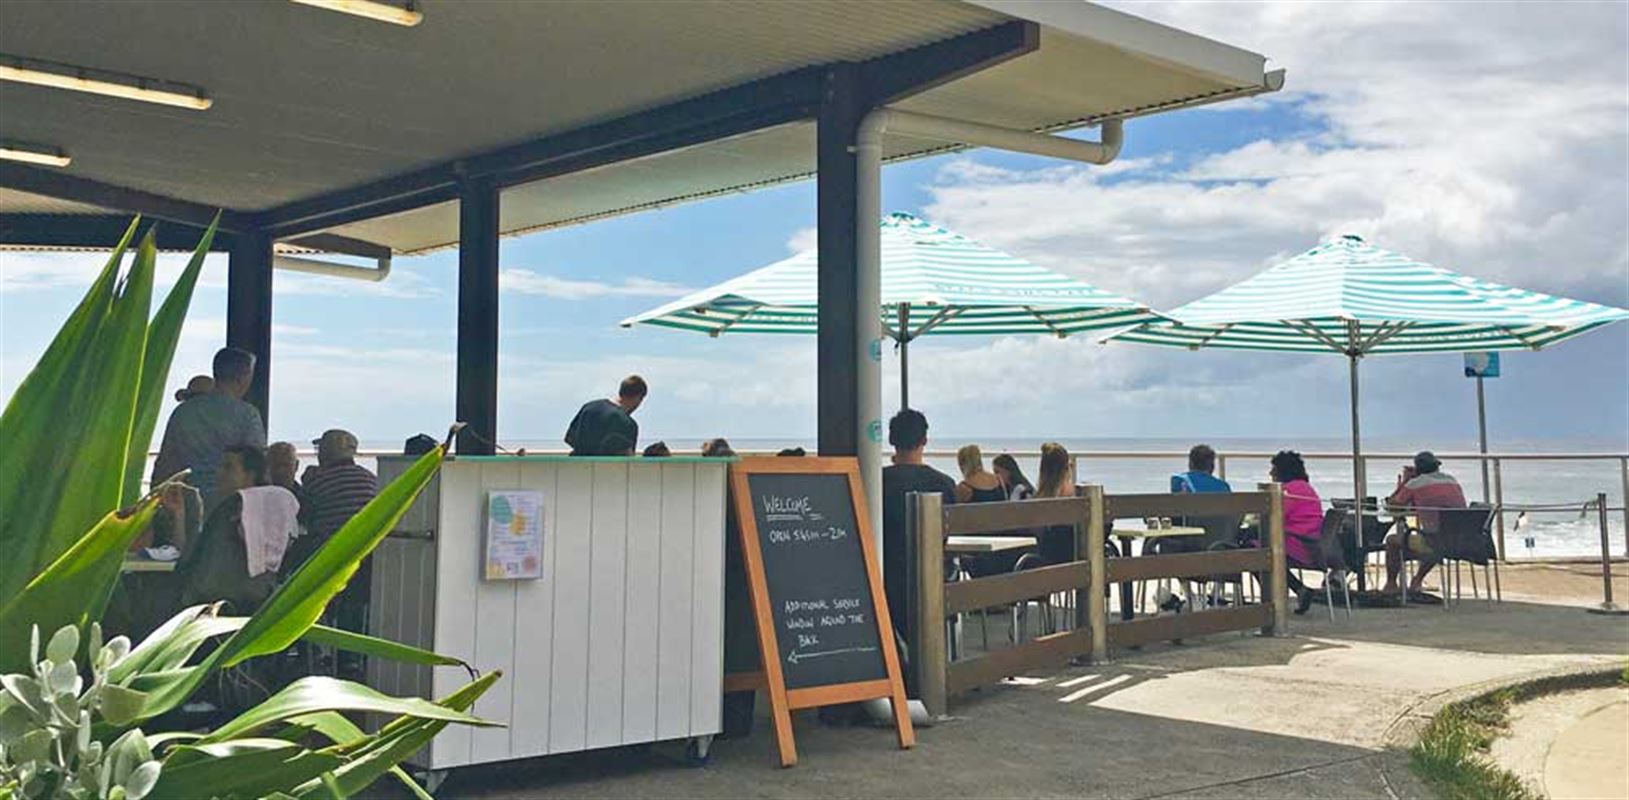 Beach Bums Cafe, Forster - Cafe Restaurant Menu, Phone, Reviews